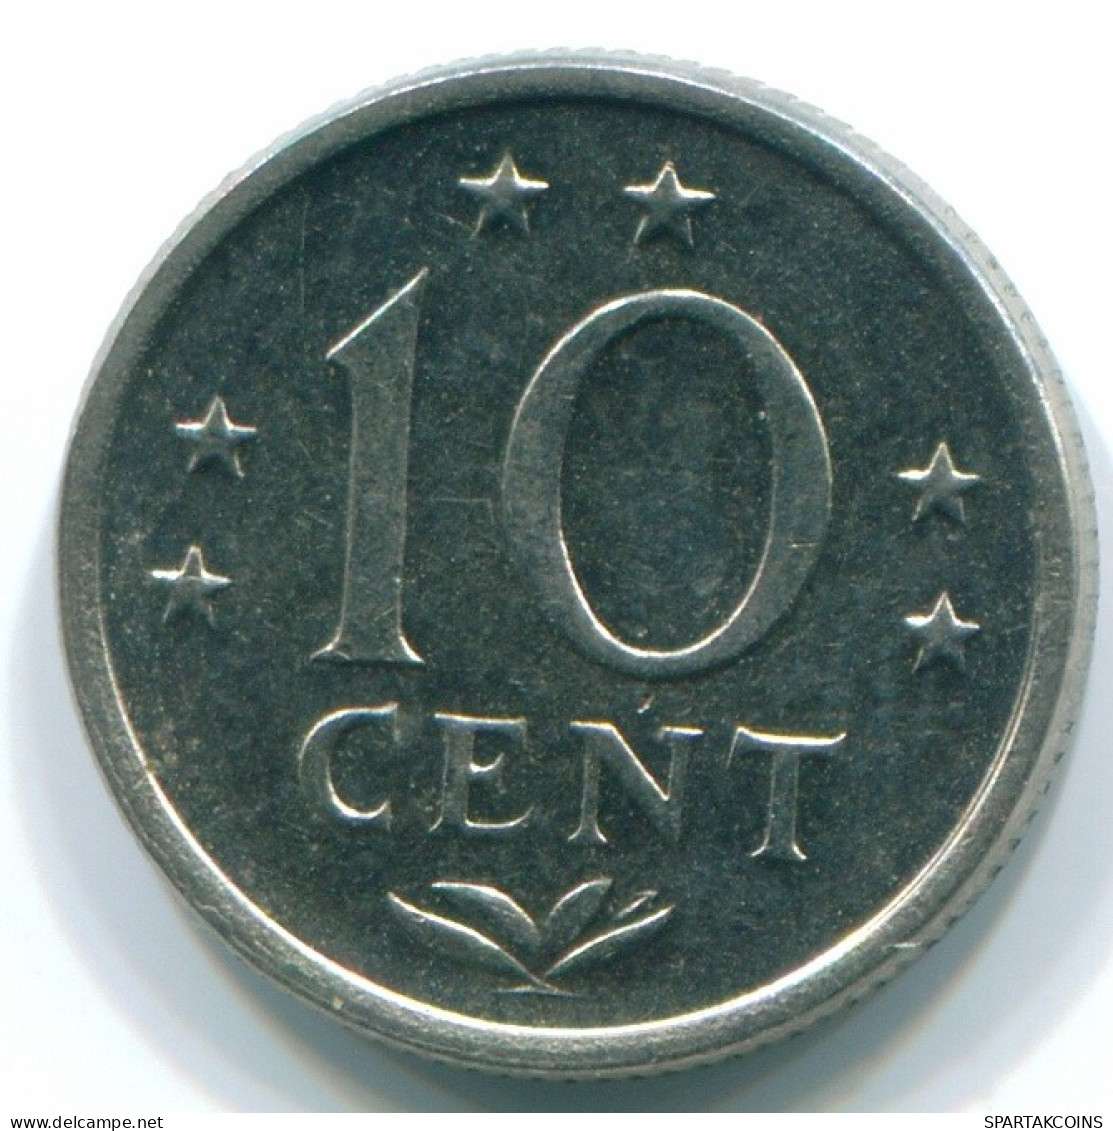 10 CENTS 1971 NIEDERLÄNDISCHE ANTILLEN Nickel Koloniale Münze #S13388.D.A - Antilles Néerlandaises